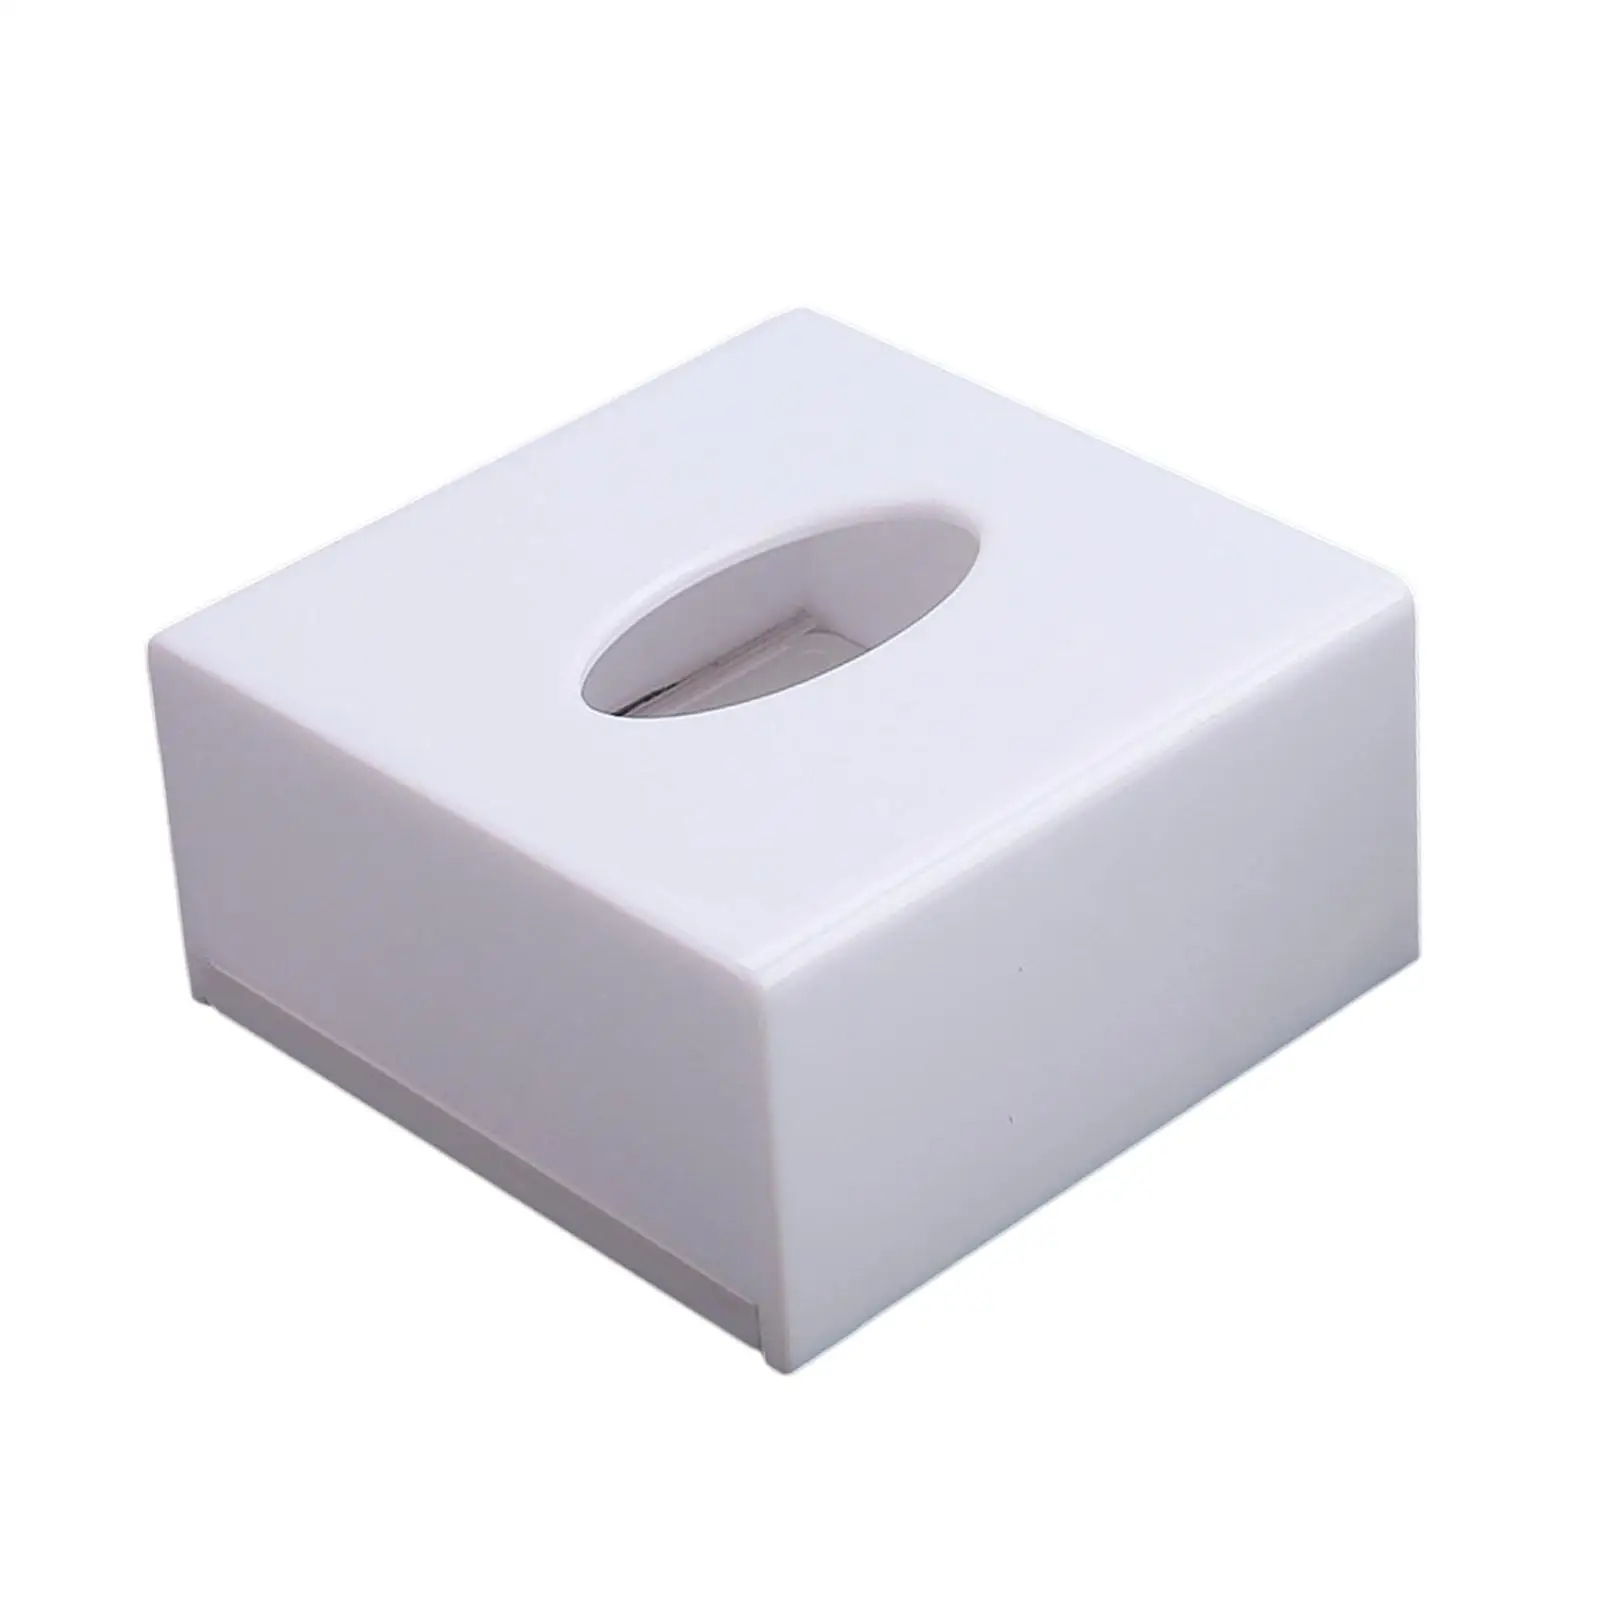 Bathroom Toilet Paper Holder Acrylic Toilet Paper Rack Tissue Case Napkin Organizer for Restaurant Hotel Office Toilet